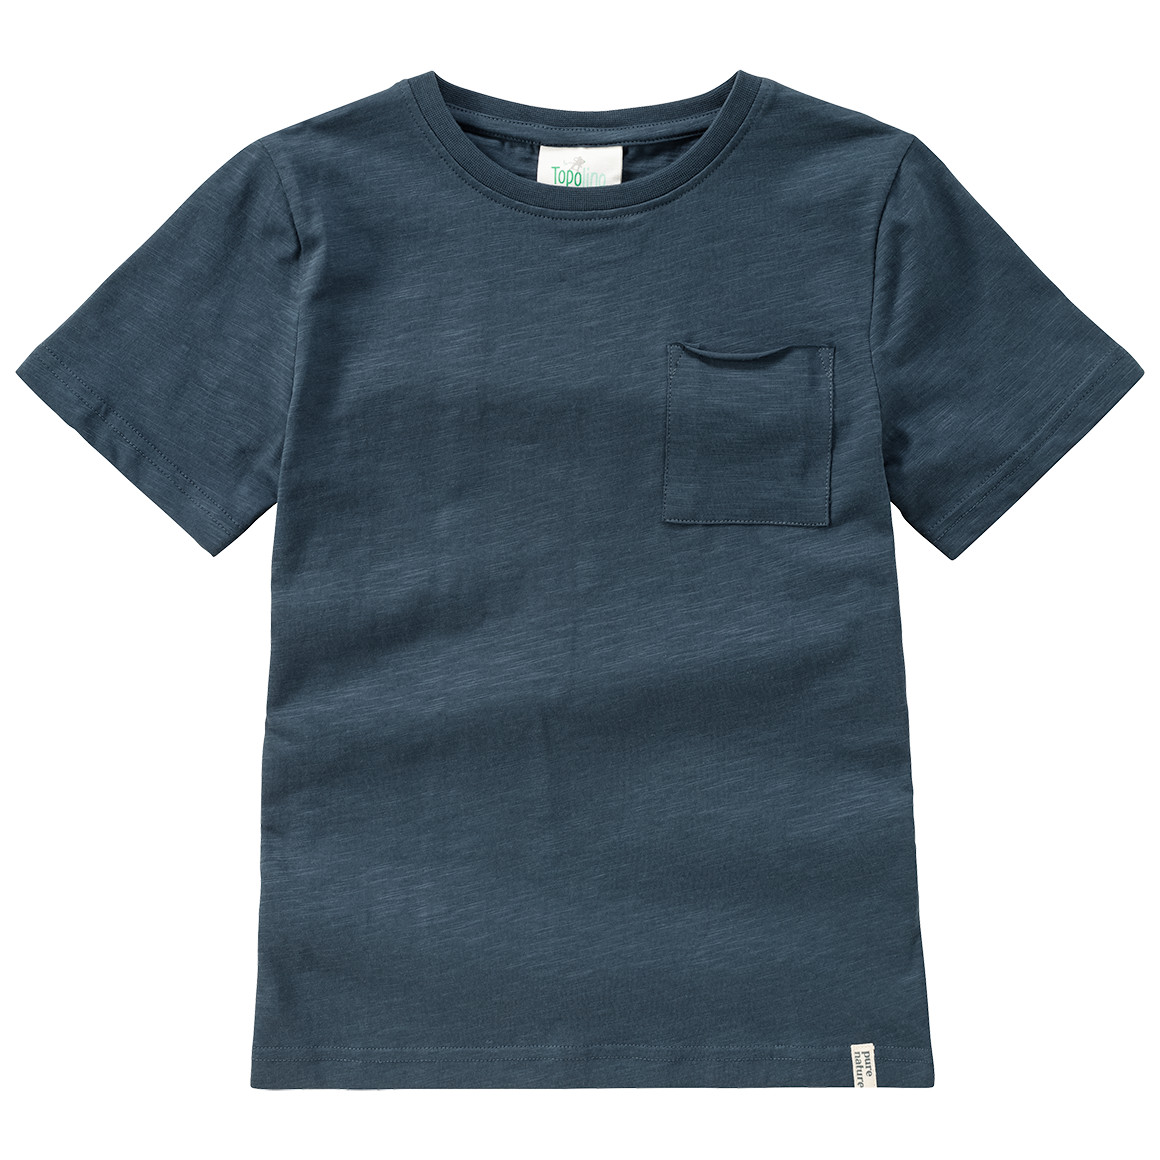 Jungen T-Shirt im Basic-Look von Topolino